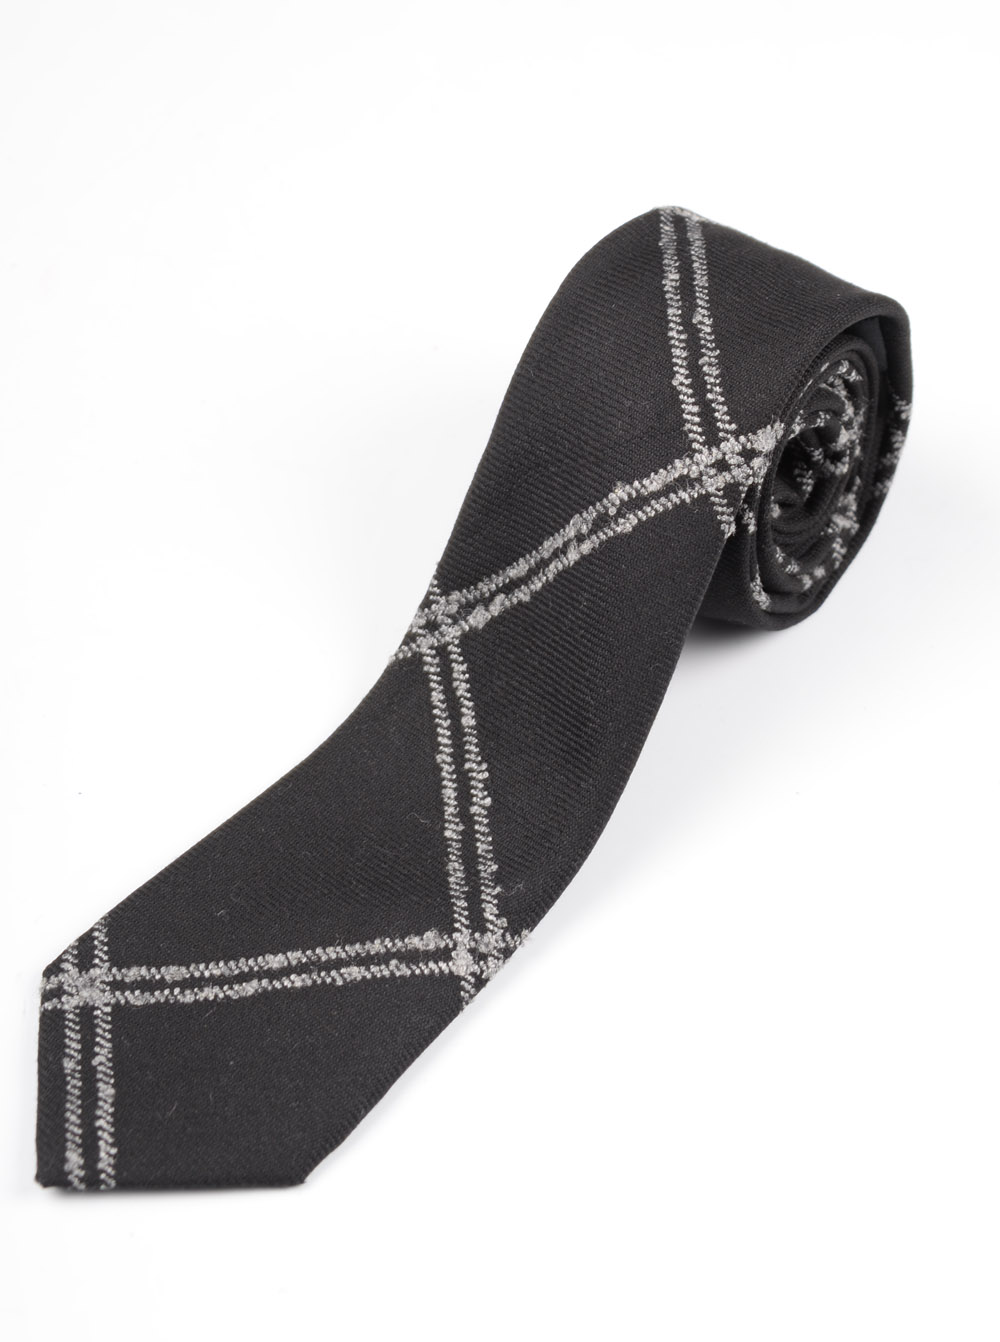 Cravata barbateasca cod - cv84